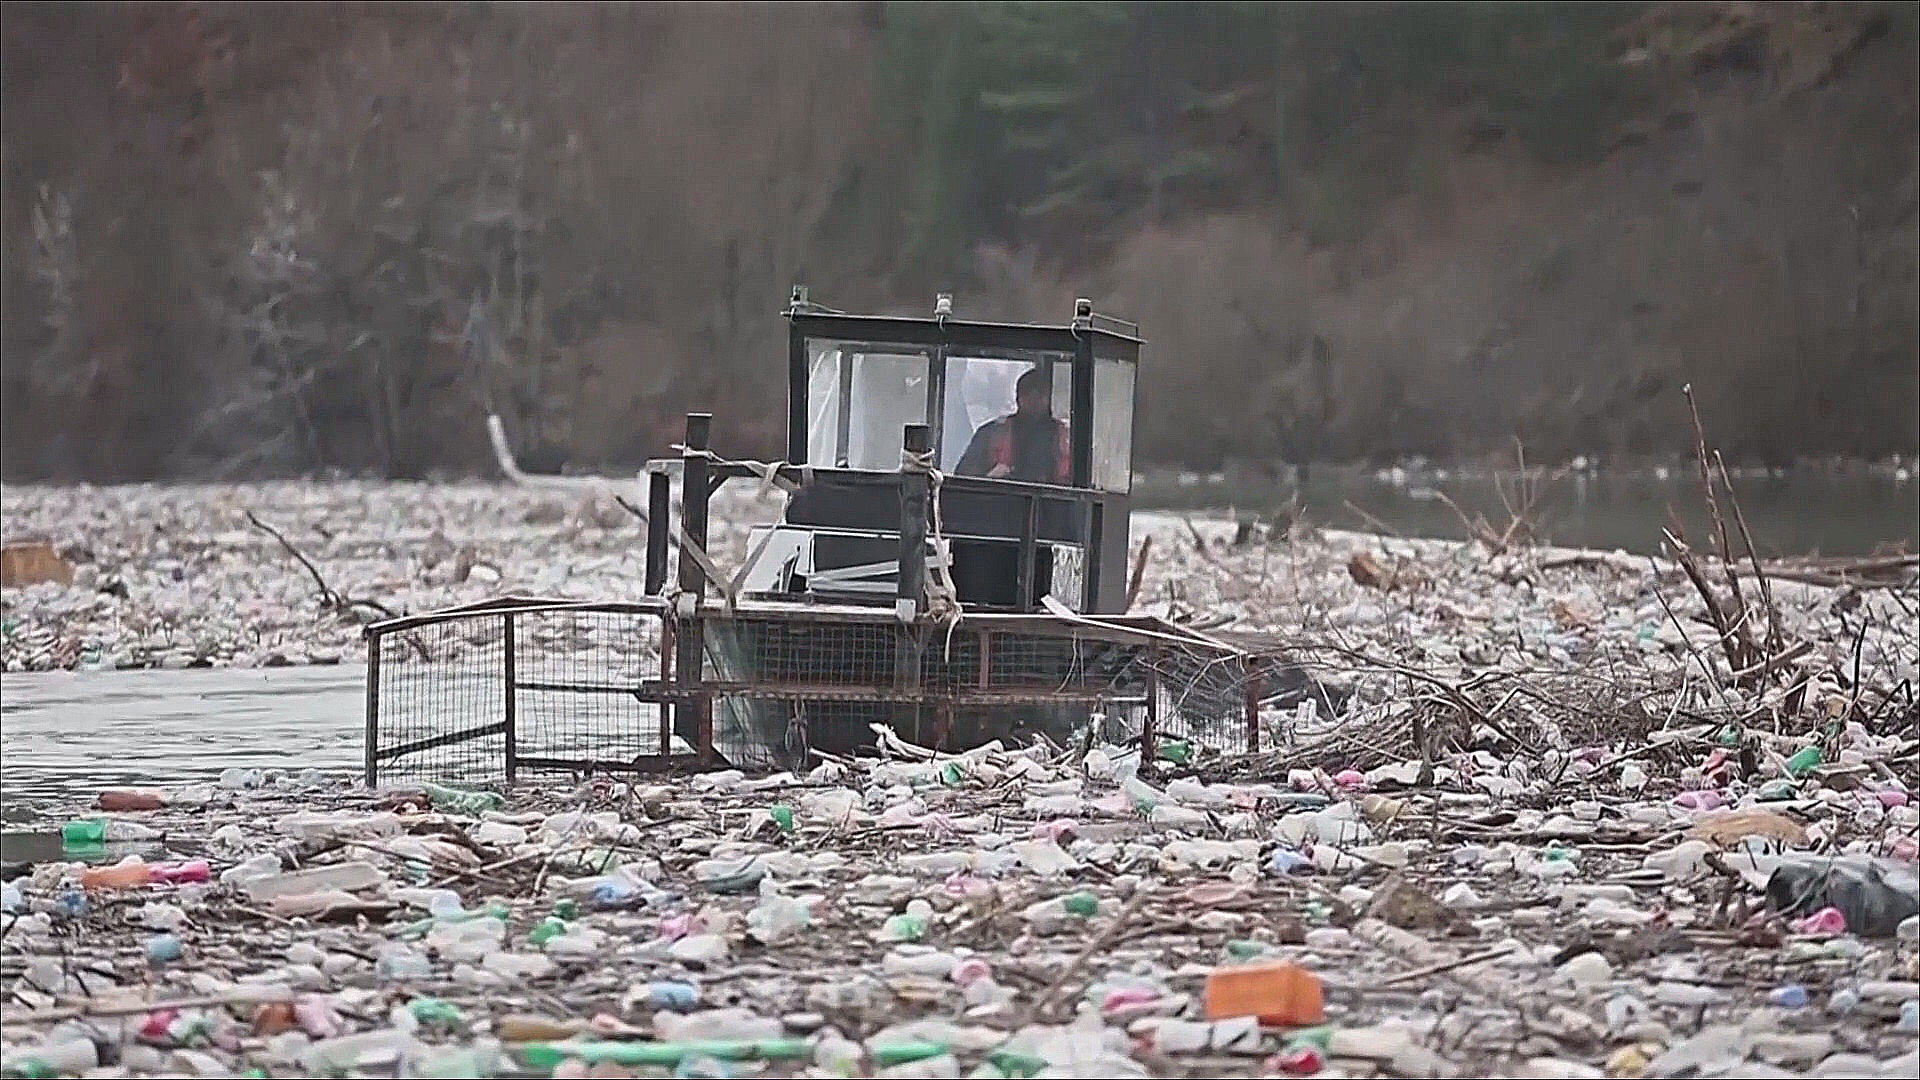 430 млн тонн пластика ежегодно: мир встал перед глобальным вопросом